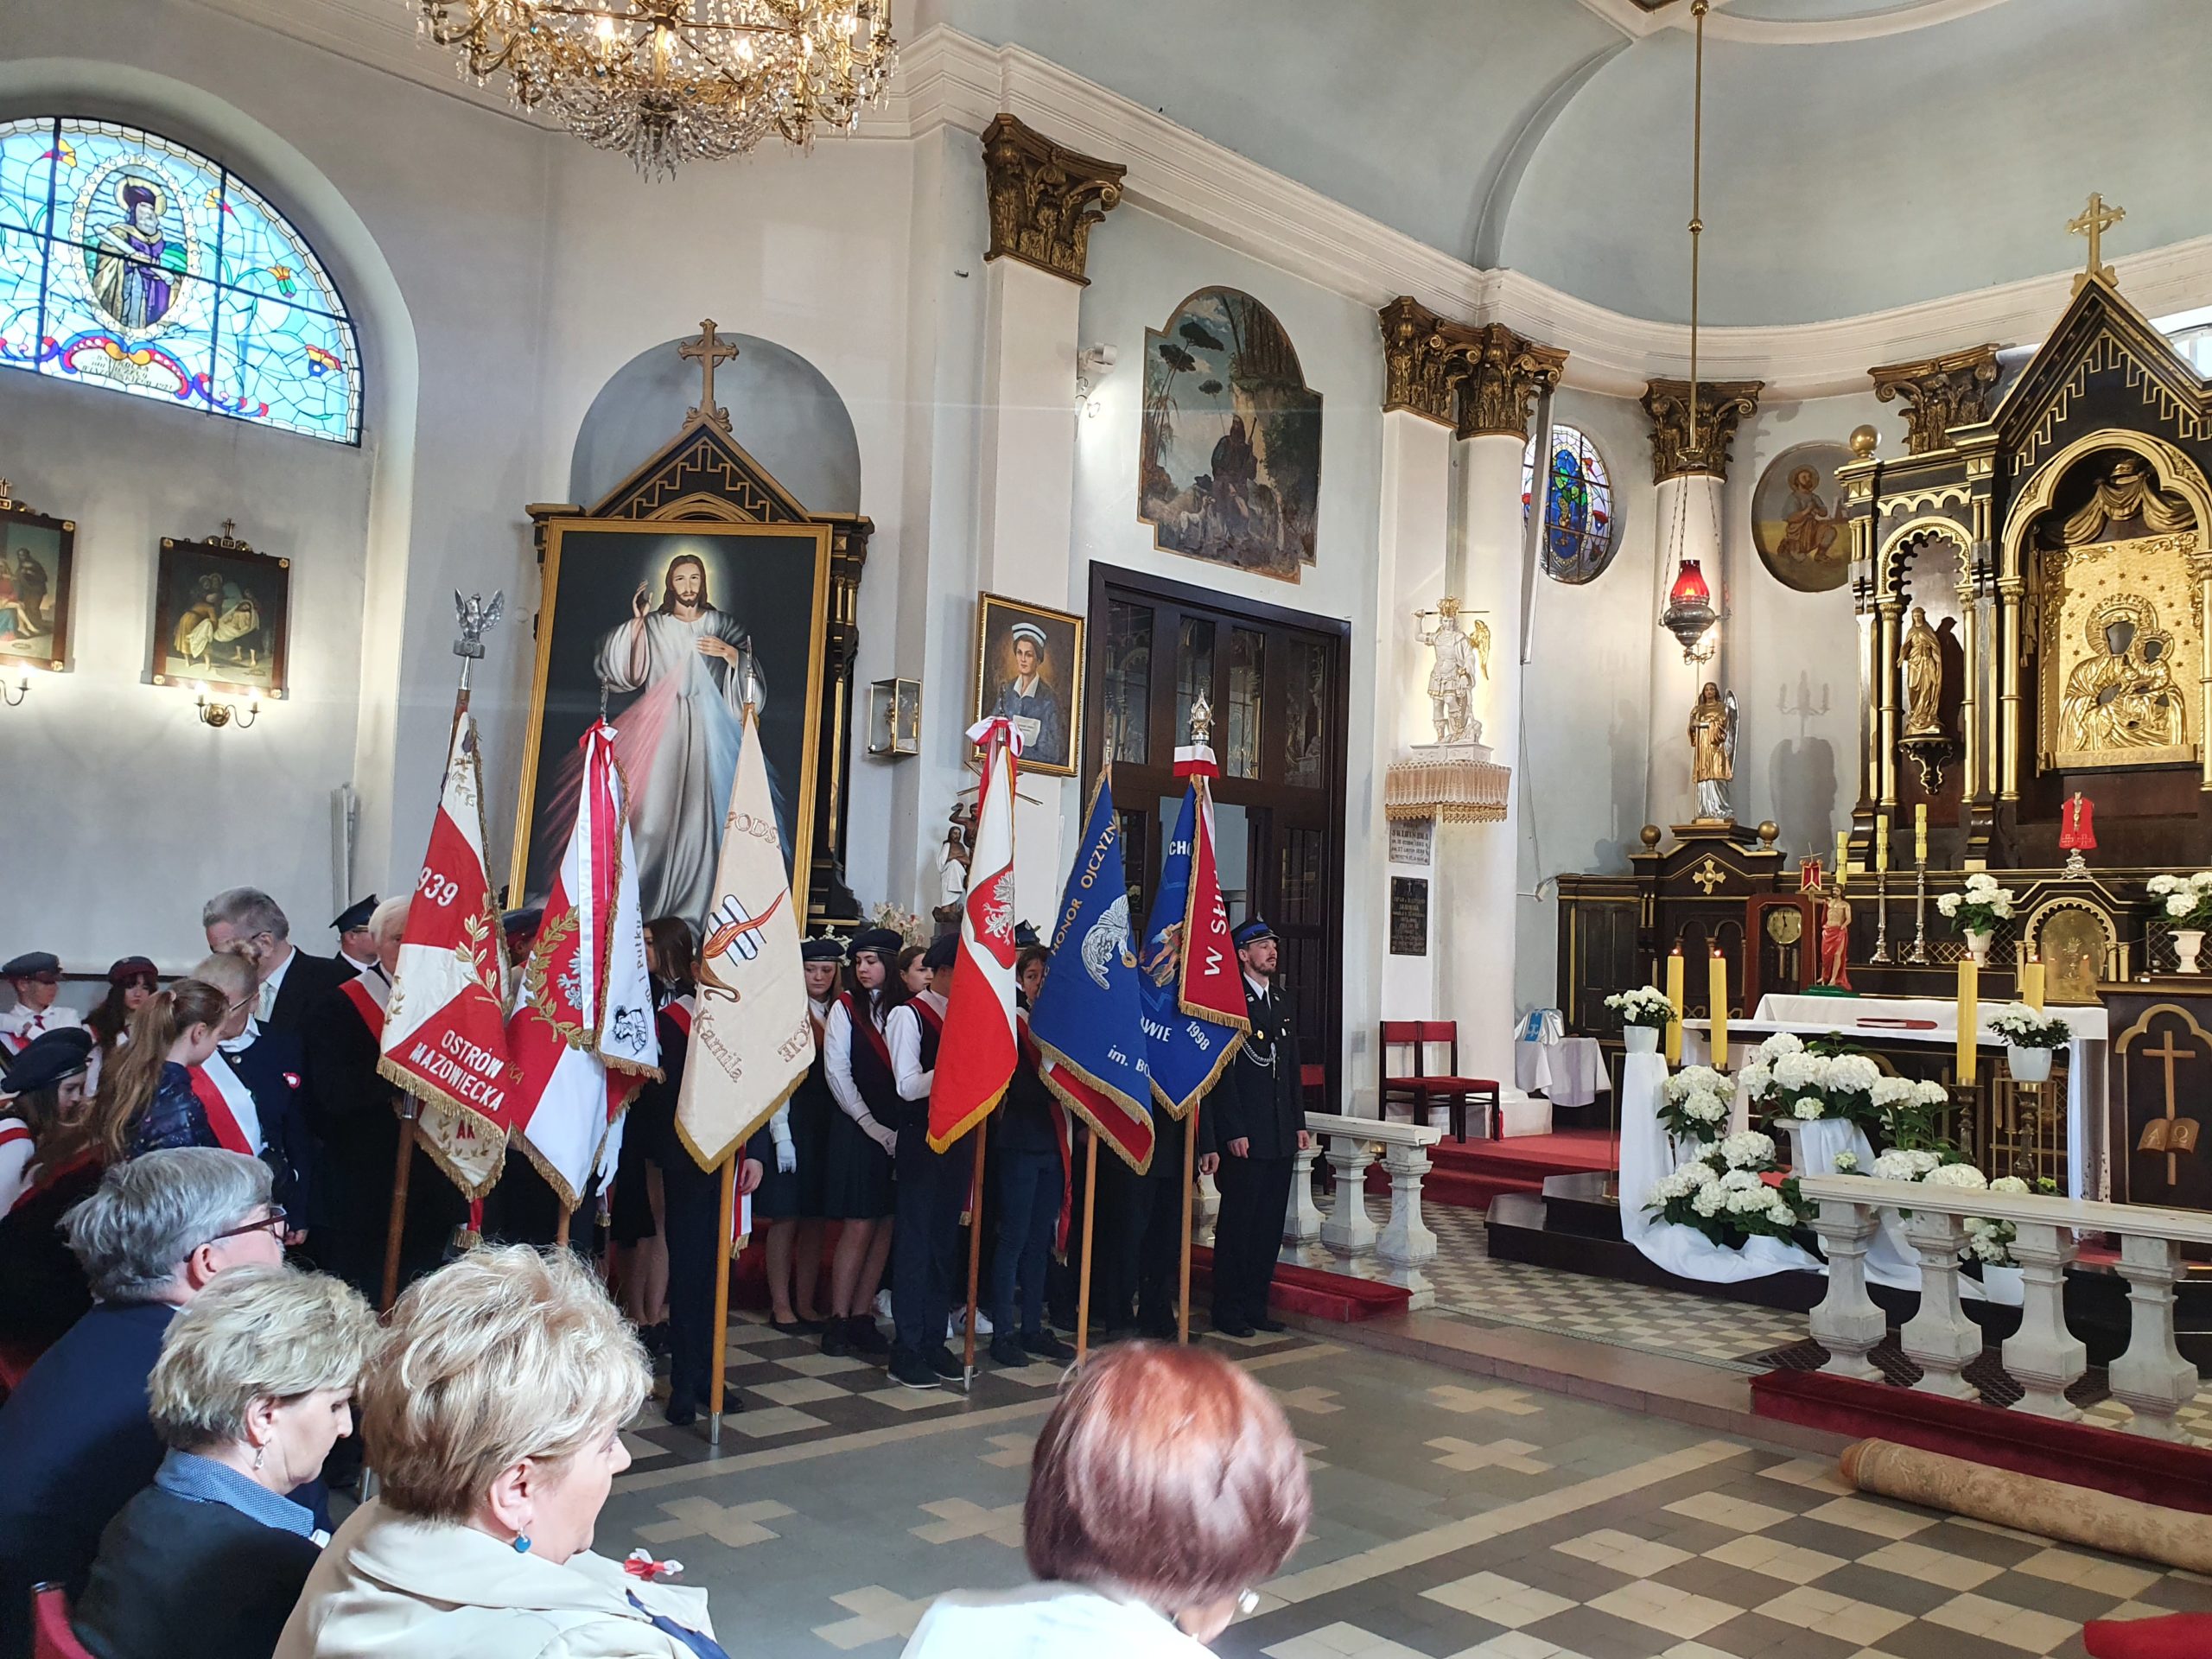 Gminne obchody rocznicy uchwalenia ustawy zasadniczej, czyli Konstytucji 3 Maja, w Wiązownie. POczty sztandarowe w kościele.